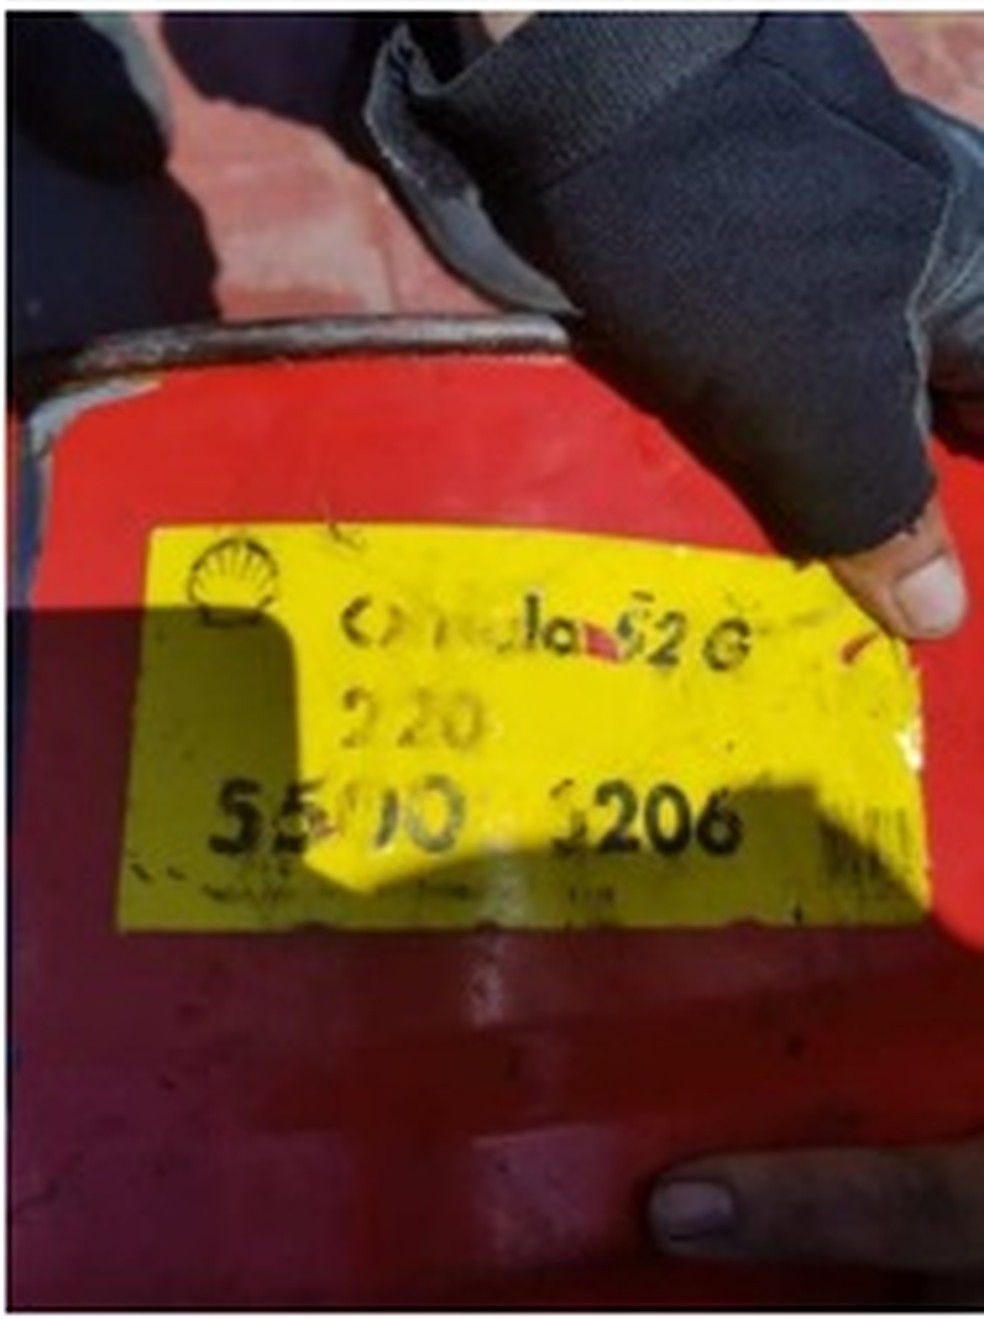 Tambor encontrado na costa do Rio Grande do Norte tem a marca da empresa Shell — Foto: Divulgação/Marinha do Brasil